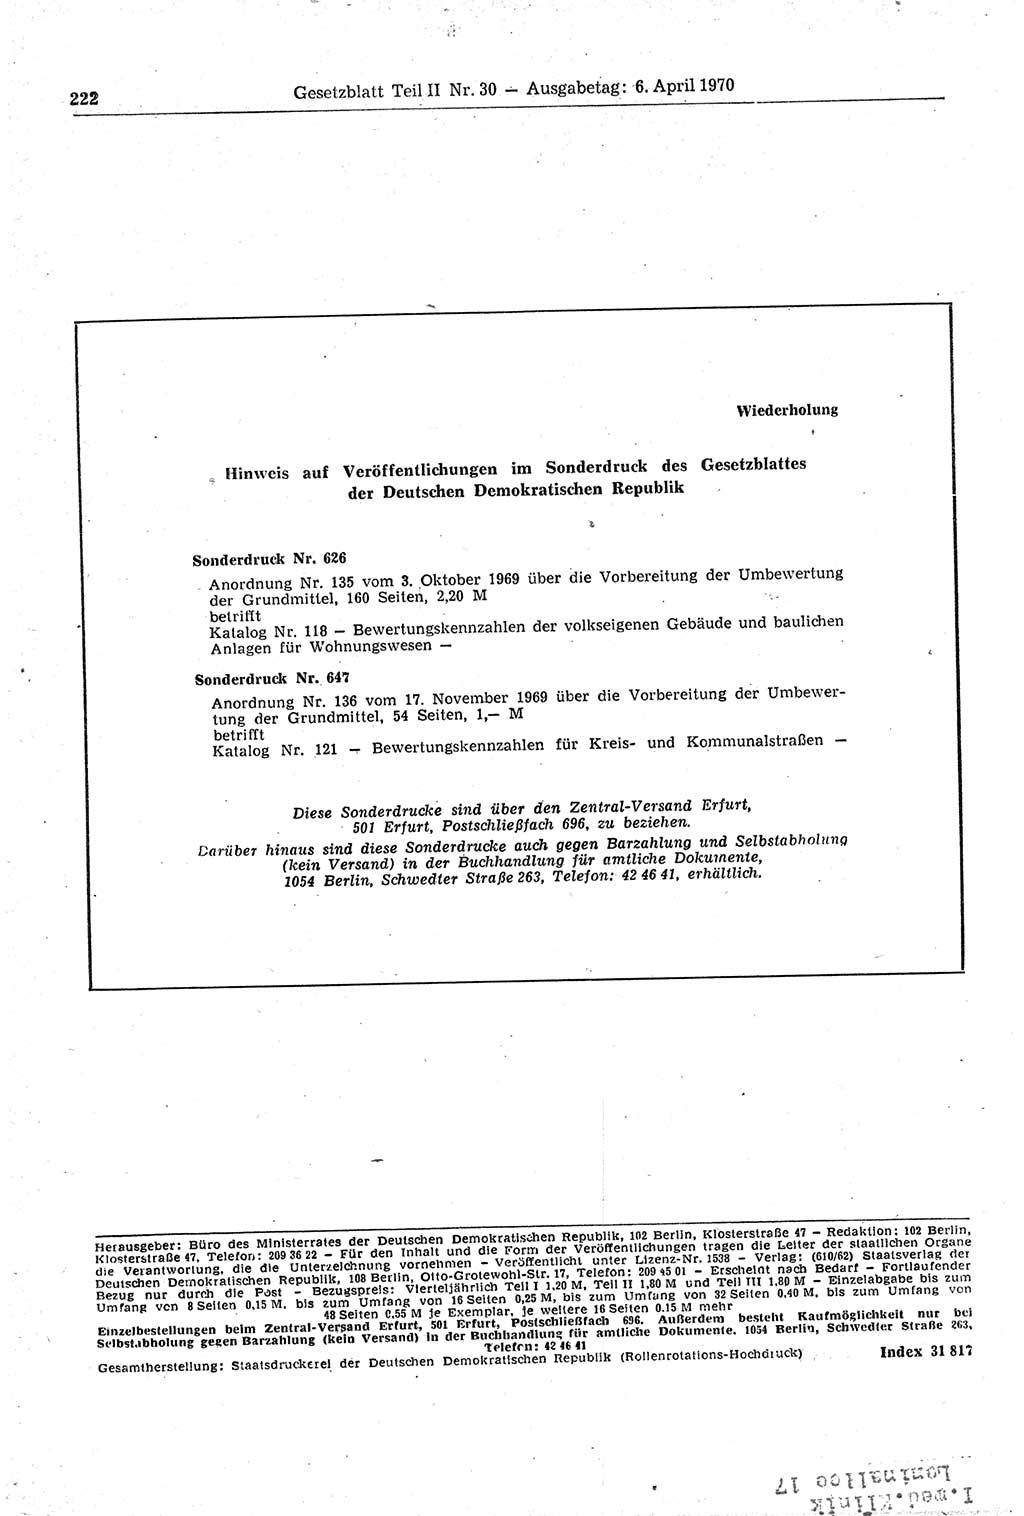 Gesetzblatt (GBl.) der Deutschen Demokratischen Republik (DDR) Teil ⅠⅠ 1970, Seite 222 (GBl. DDR ⅠⅠ 1970, S. 222)